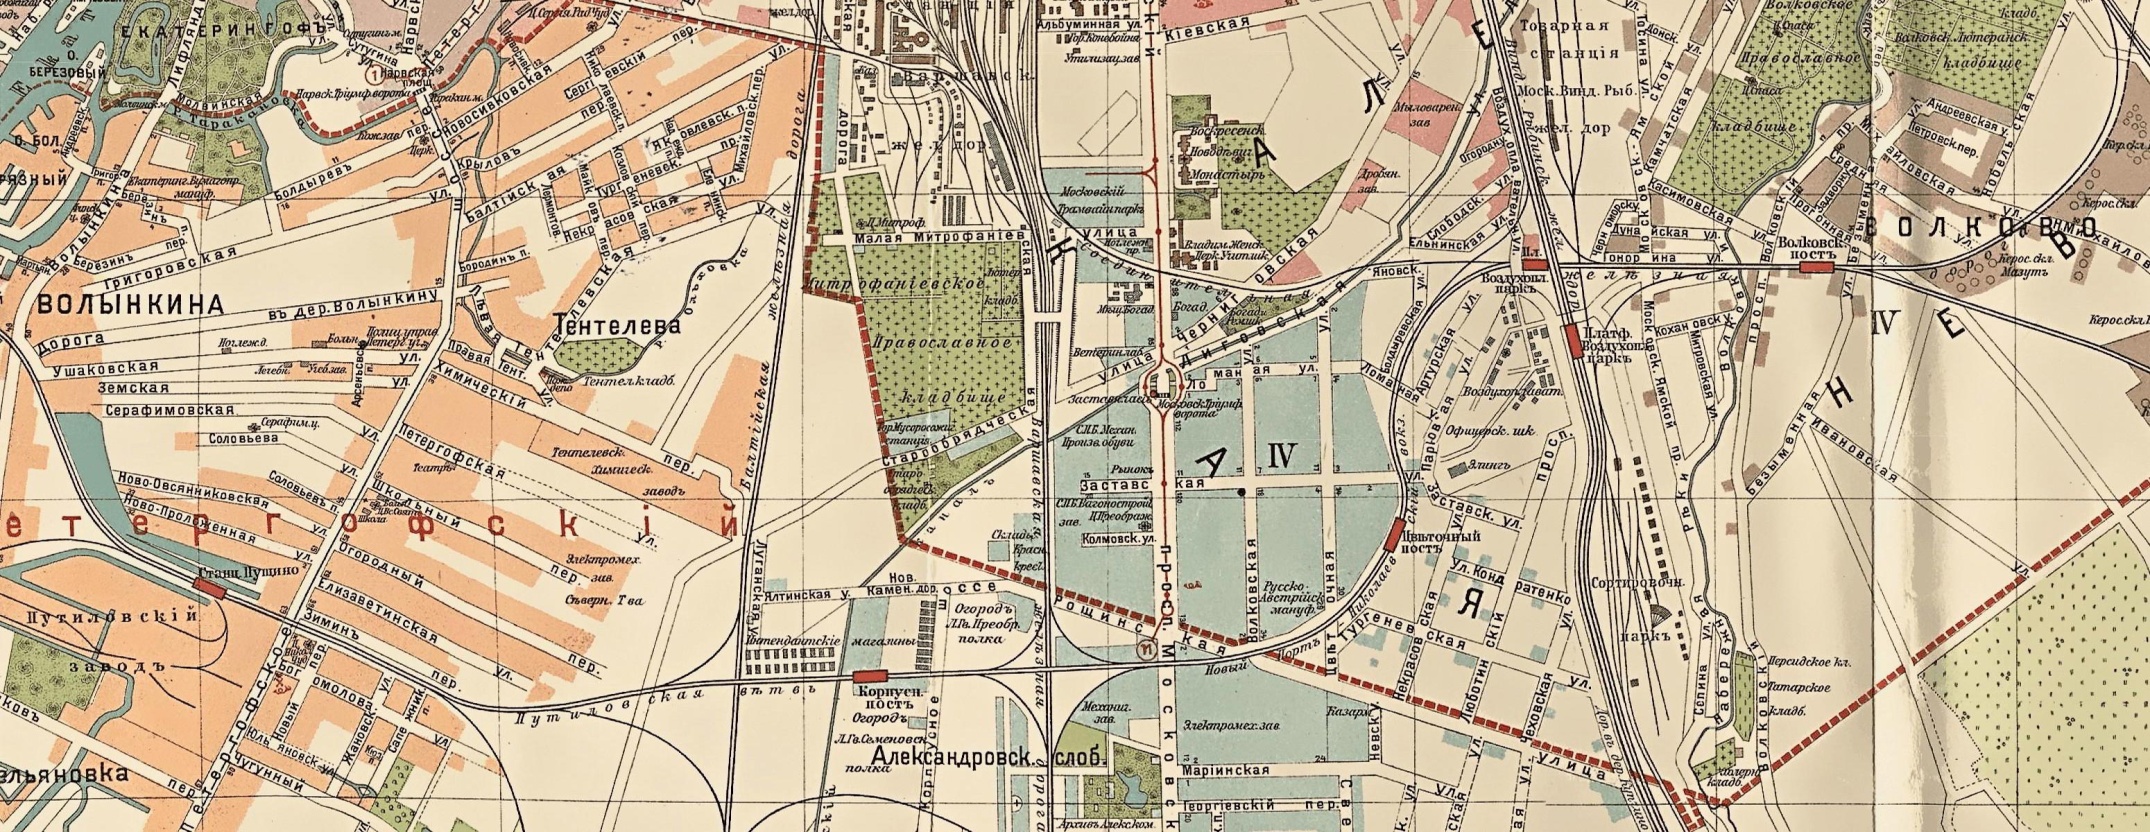 Путиловская железнодорожная ветка на карте Санкт-Петербурга 1914 года